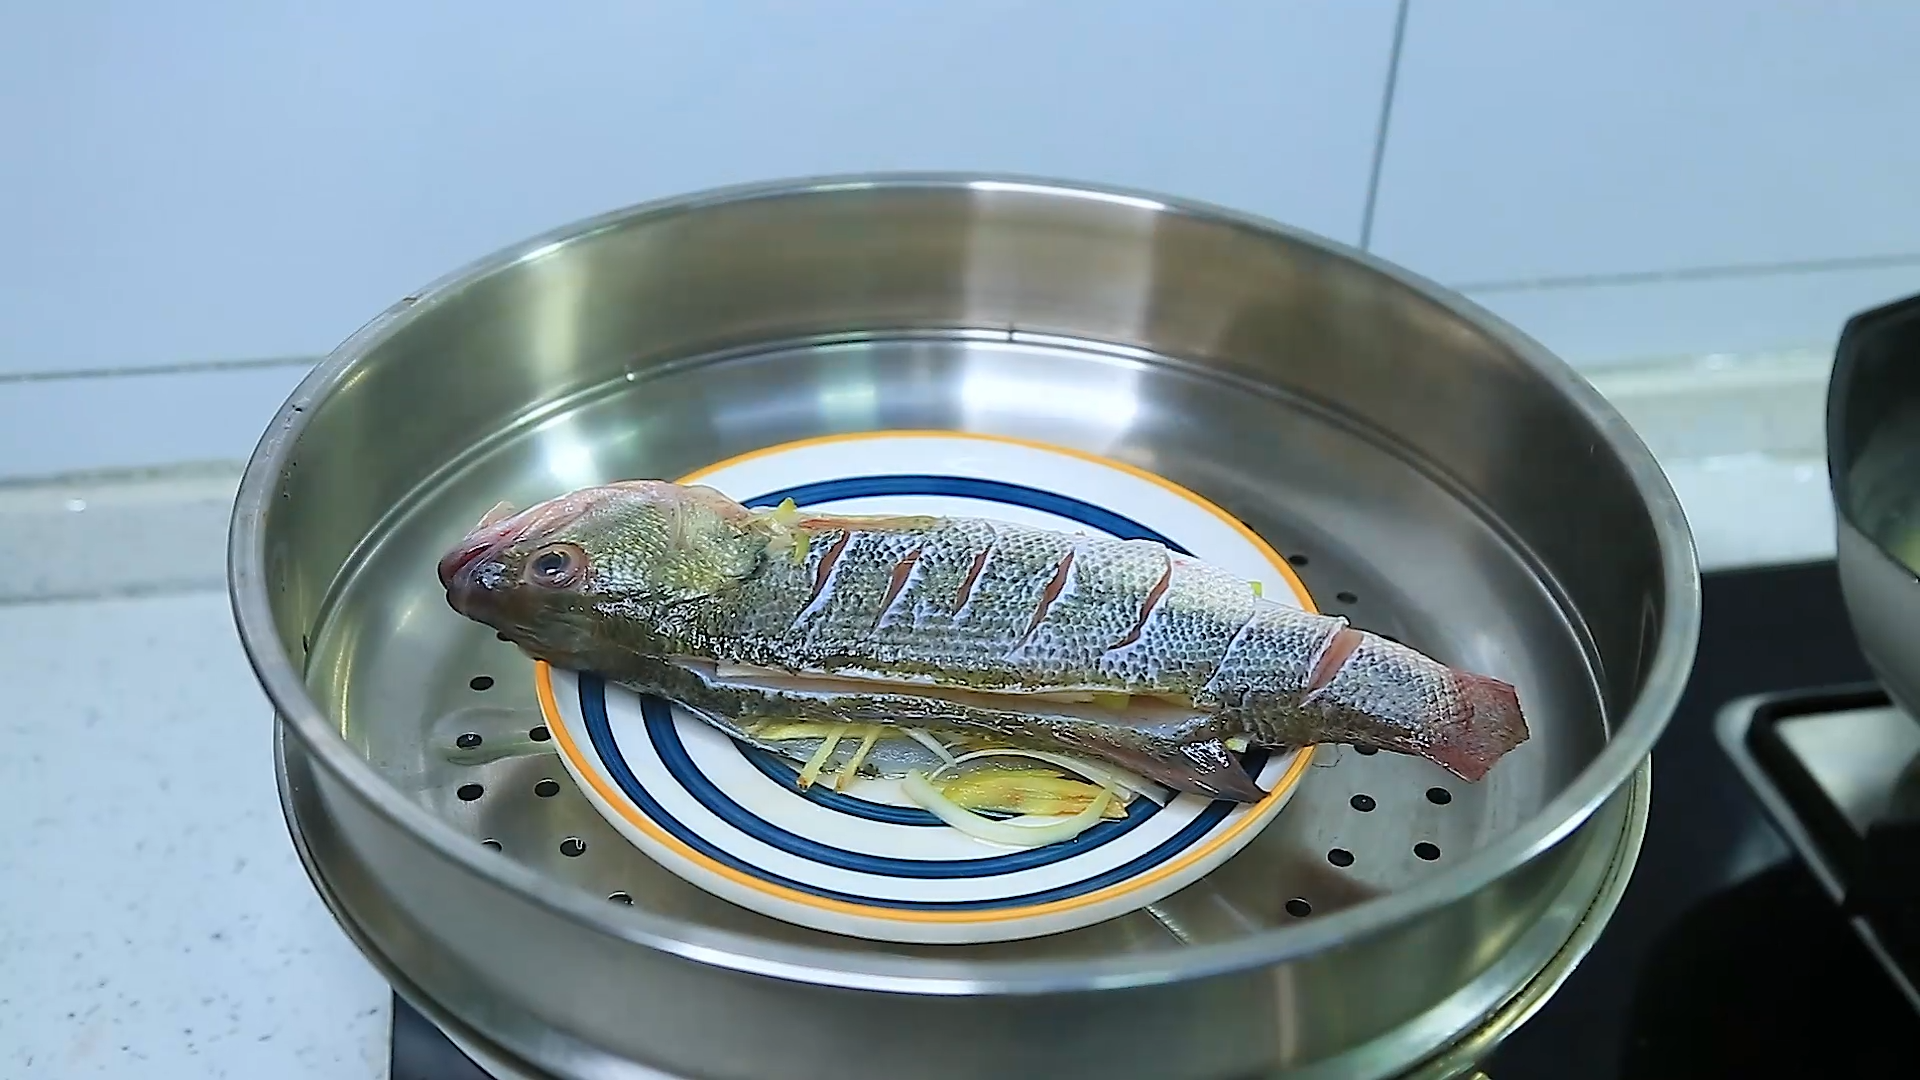 在家做清蒸鲈鱼到底蒸多久才好吃呢？是用冷水呢？还是热水蒸呢？